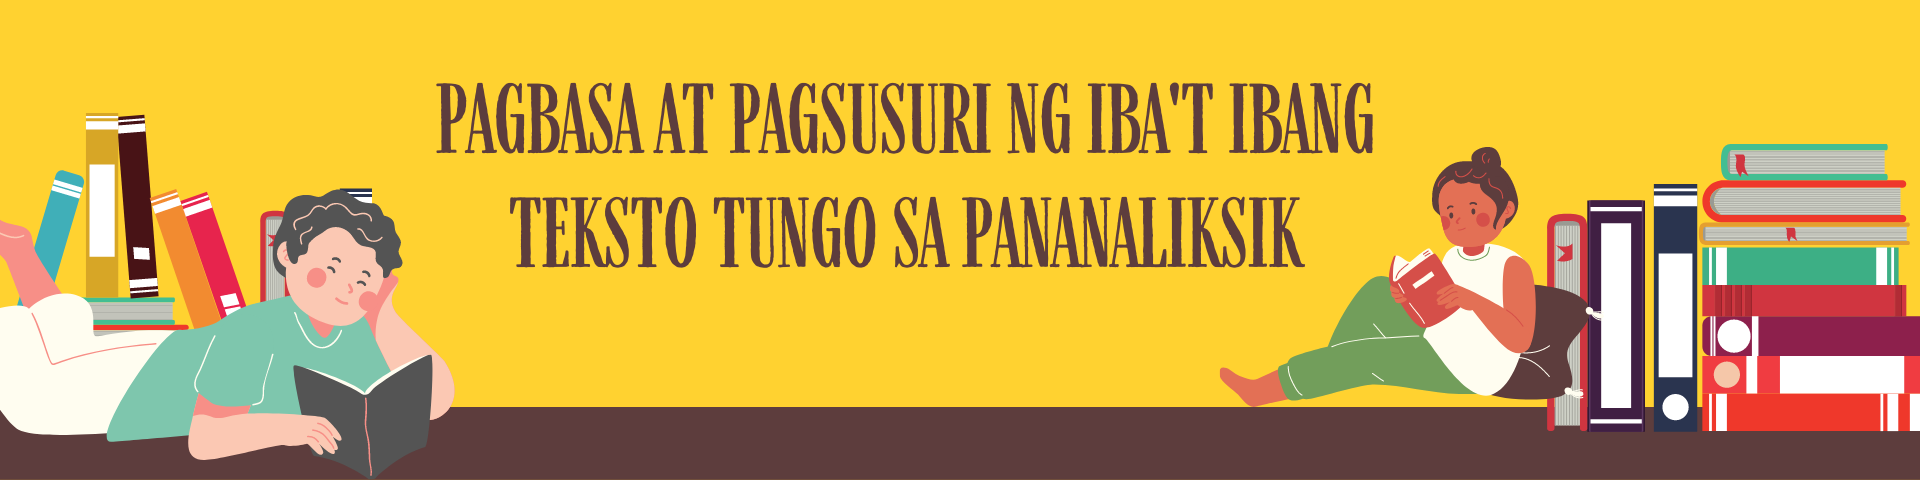 Pagbasa at Pagsusuri ng Iba't ibang Teksto tungo sa Pananaliksik